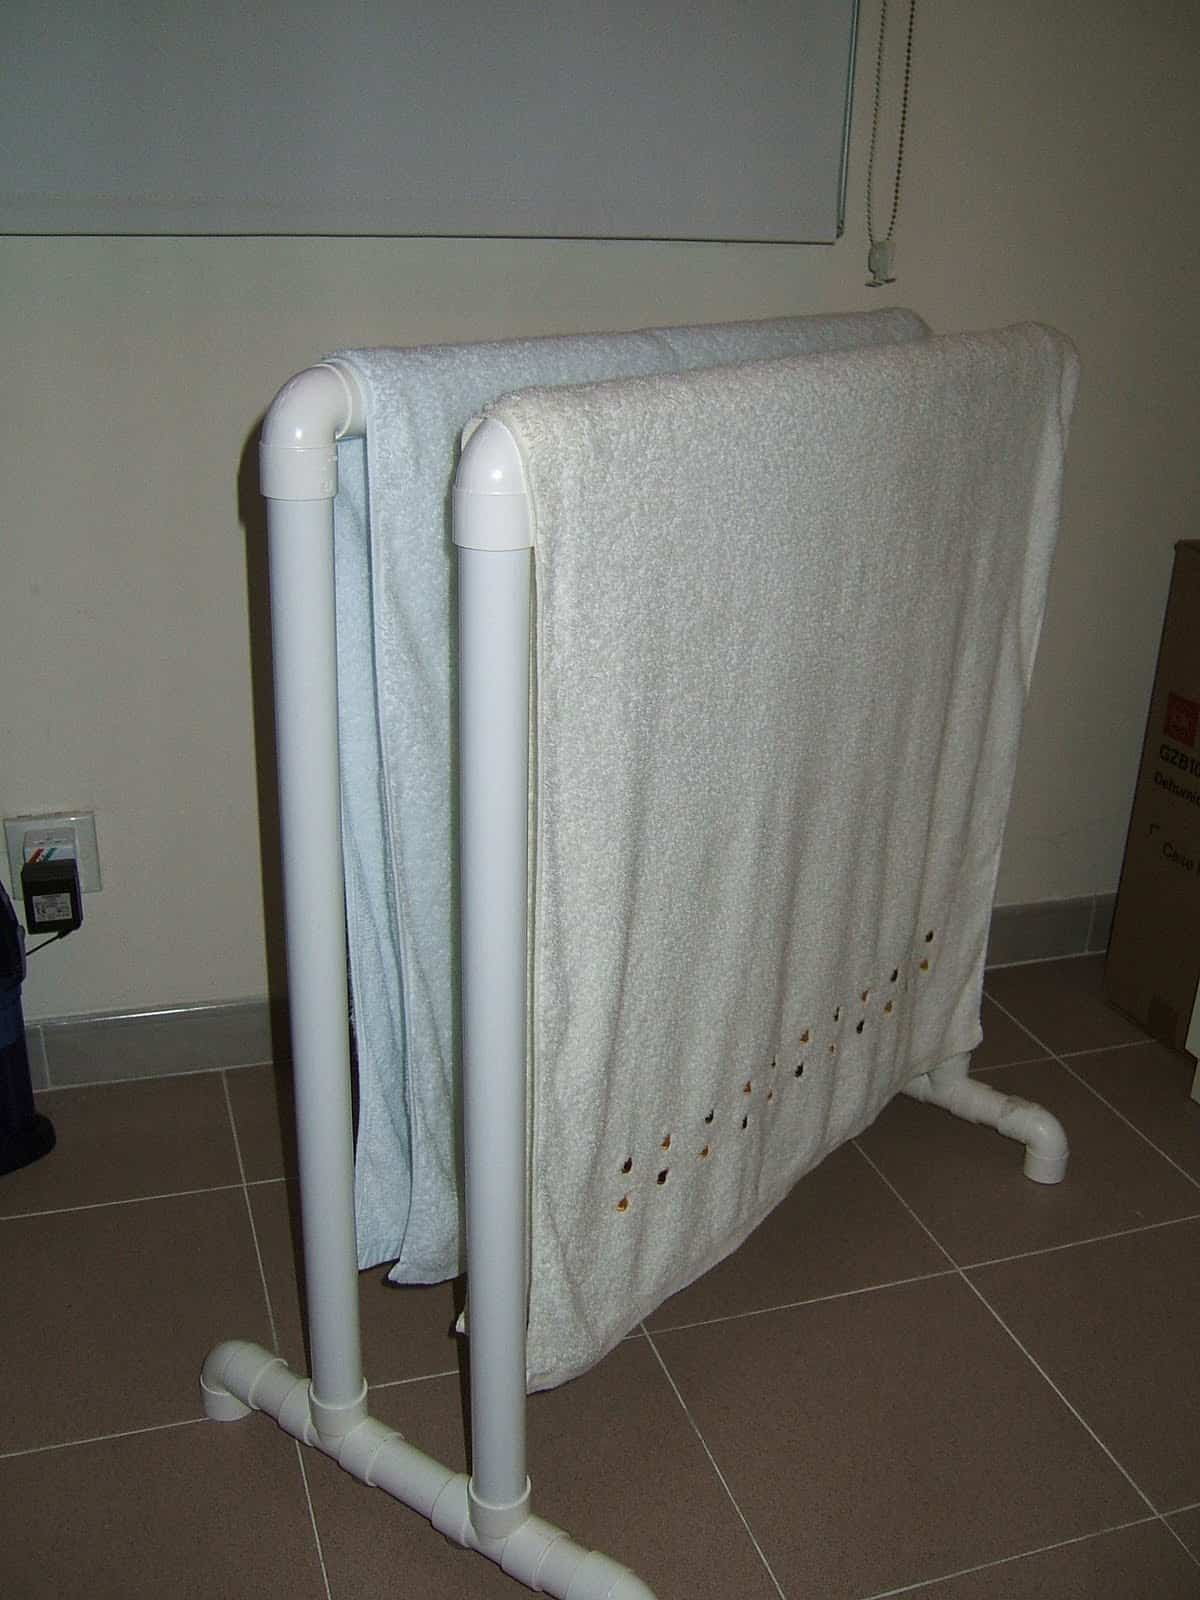 Diy Towel Racks Using Pvc Pipes